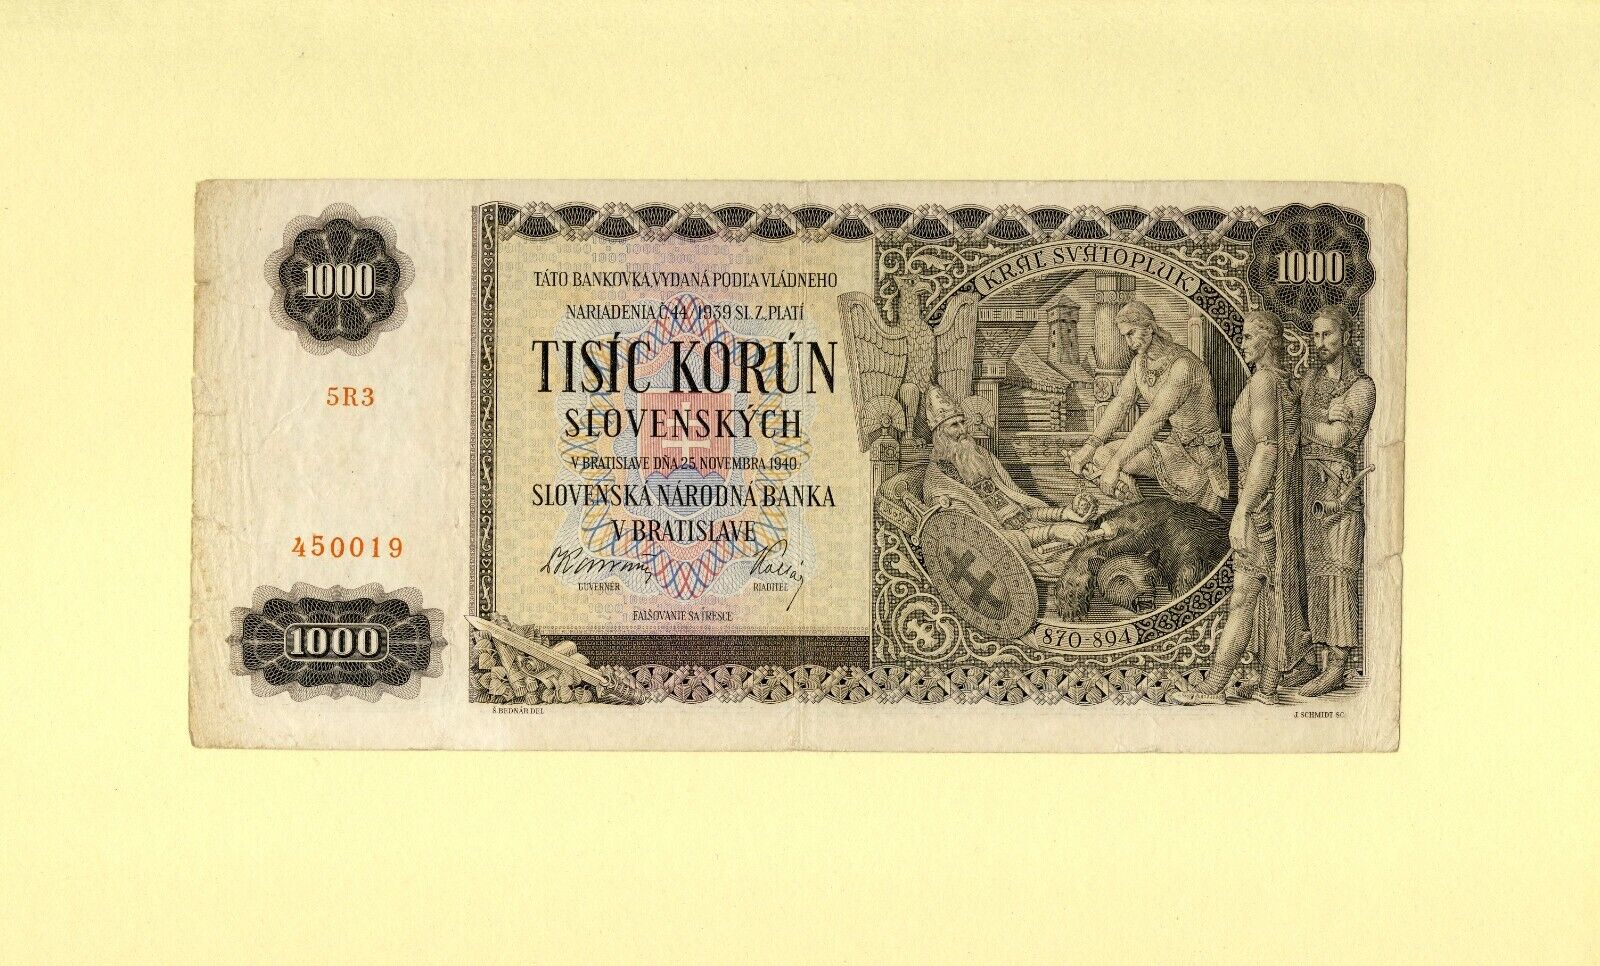 Slovakia 1000 Korun 1940 P-13a Vf++ Slovenska NÁrodnÁ Banka Slovak National Bank